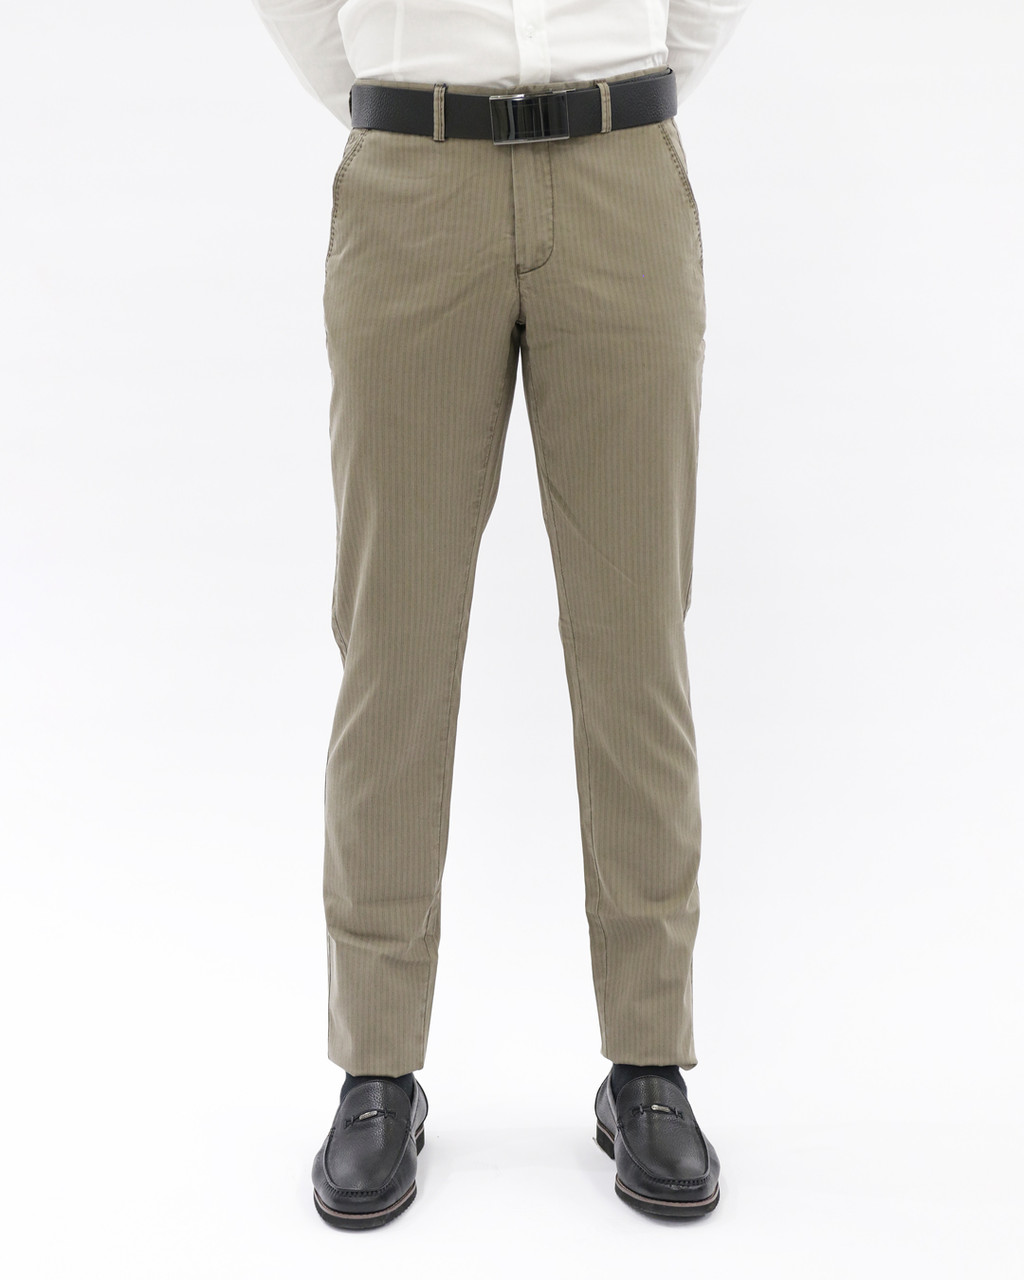 Мужские повседневные брюки «UM&H 600707660» бежевый, фото 1